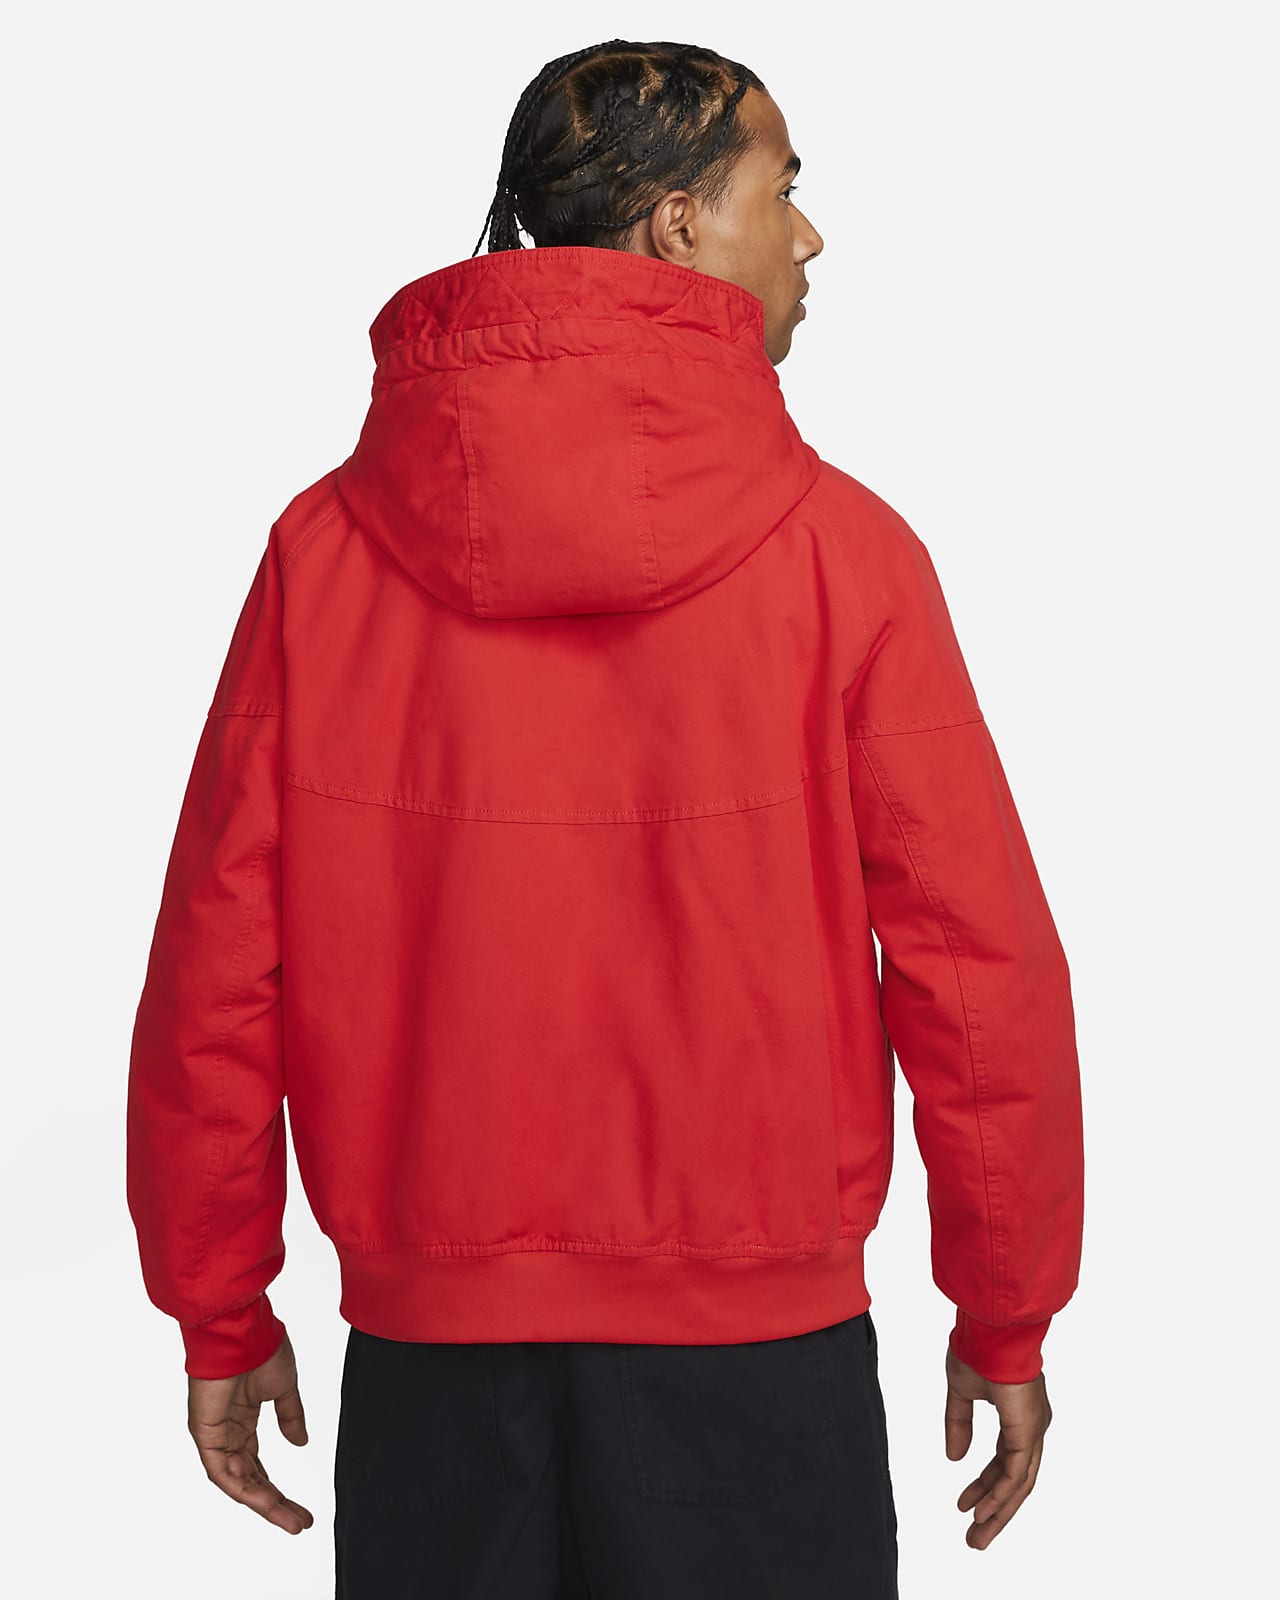 Nike Sportswear Windrunner Men's Insulated Hooded Jacket. Nike LU